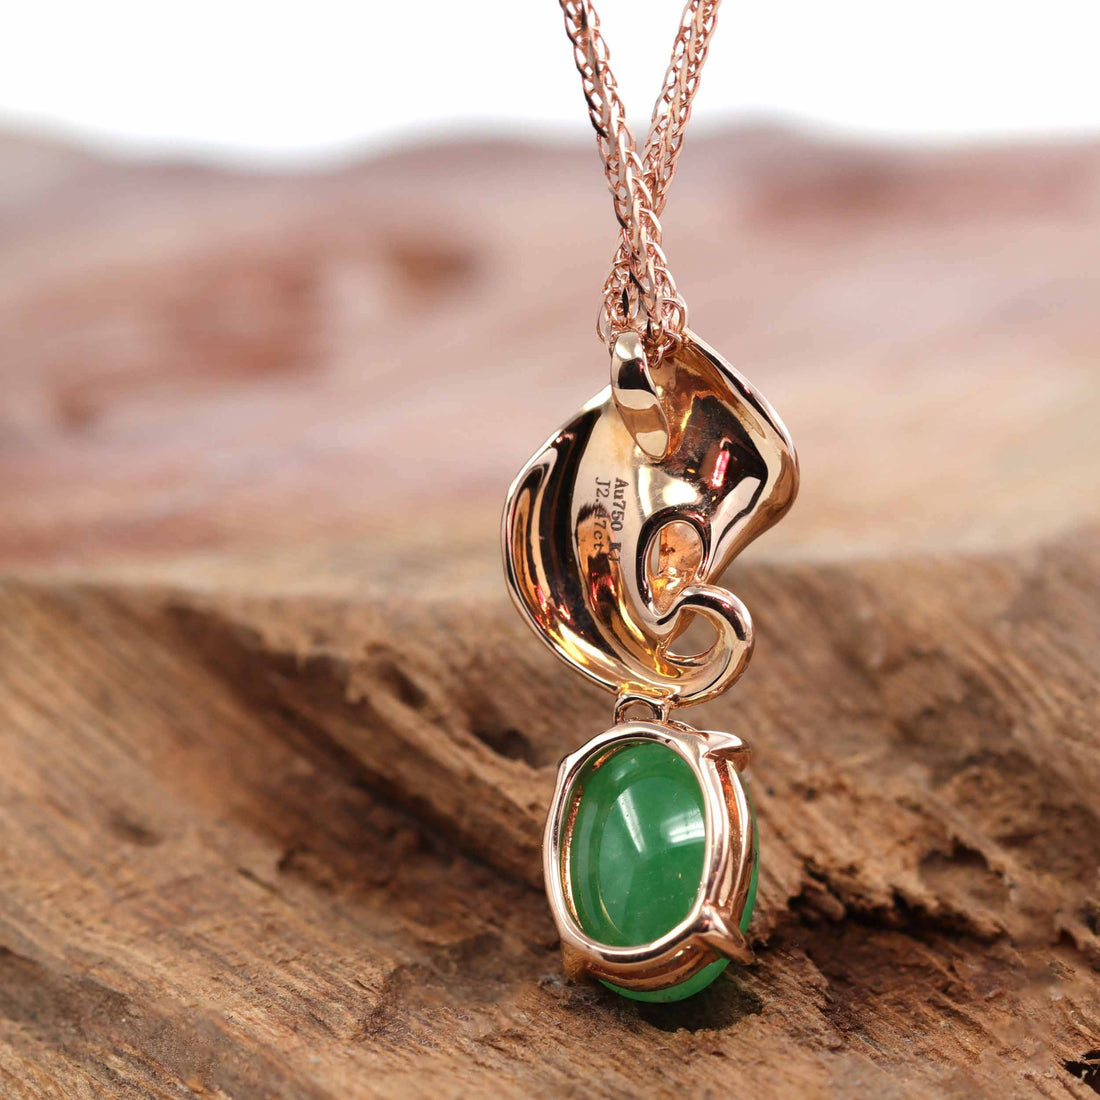 Baikalla Jewelry 18k Gold Jadeite Necklace 18K Rose Gold "Morning Glory" Genuine Jadeite Jade Pendant with Diamonds